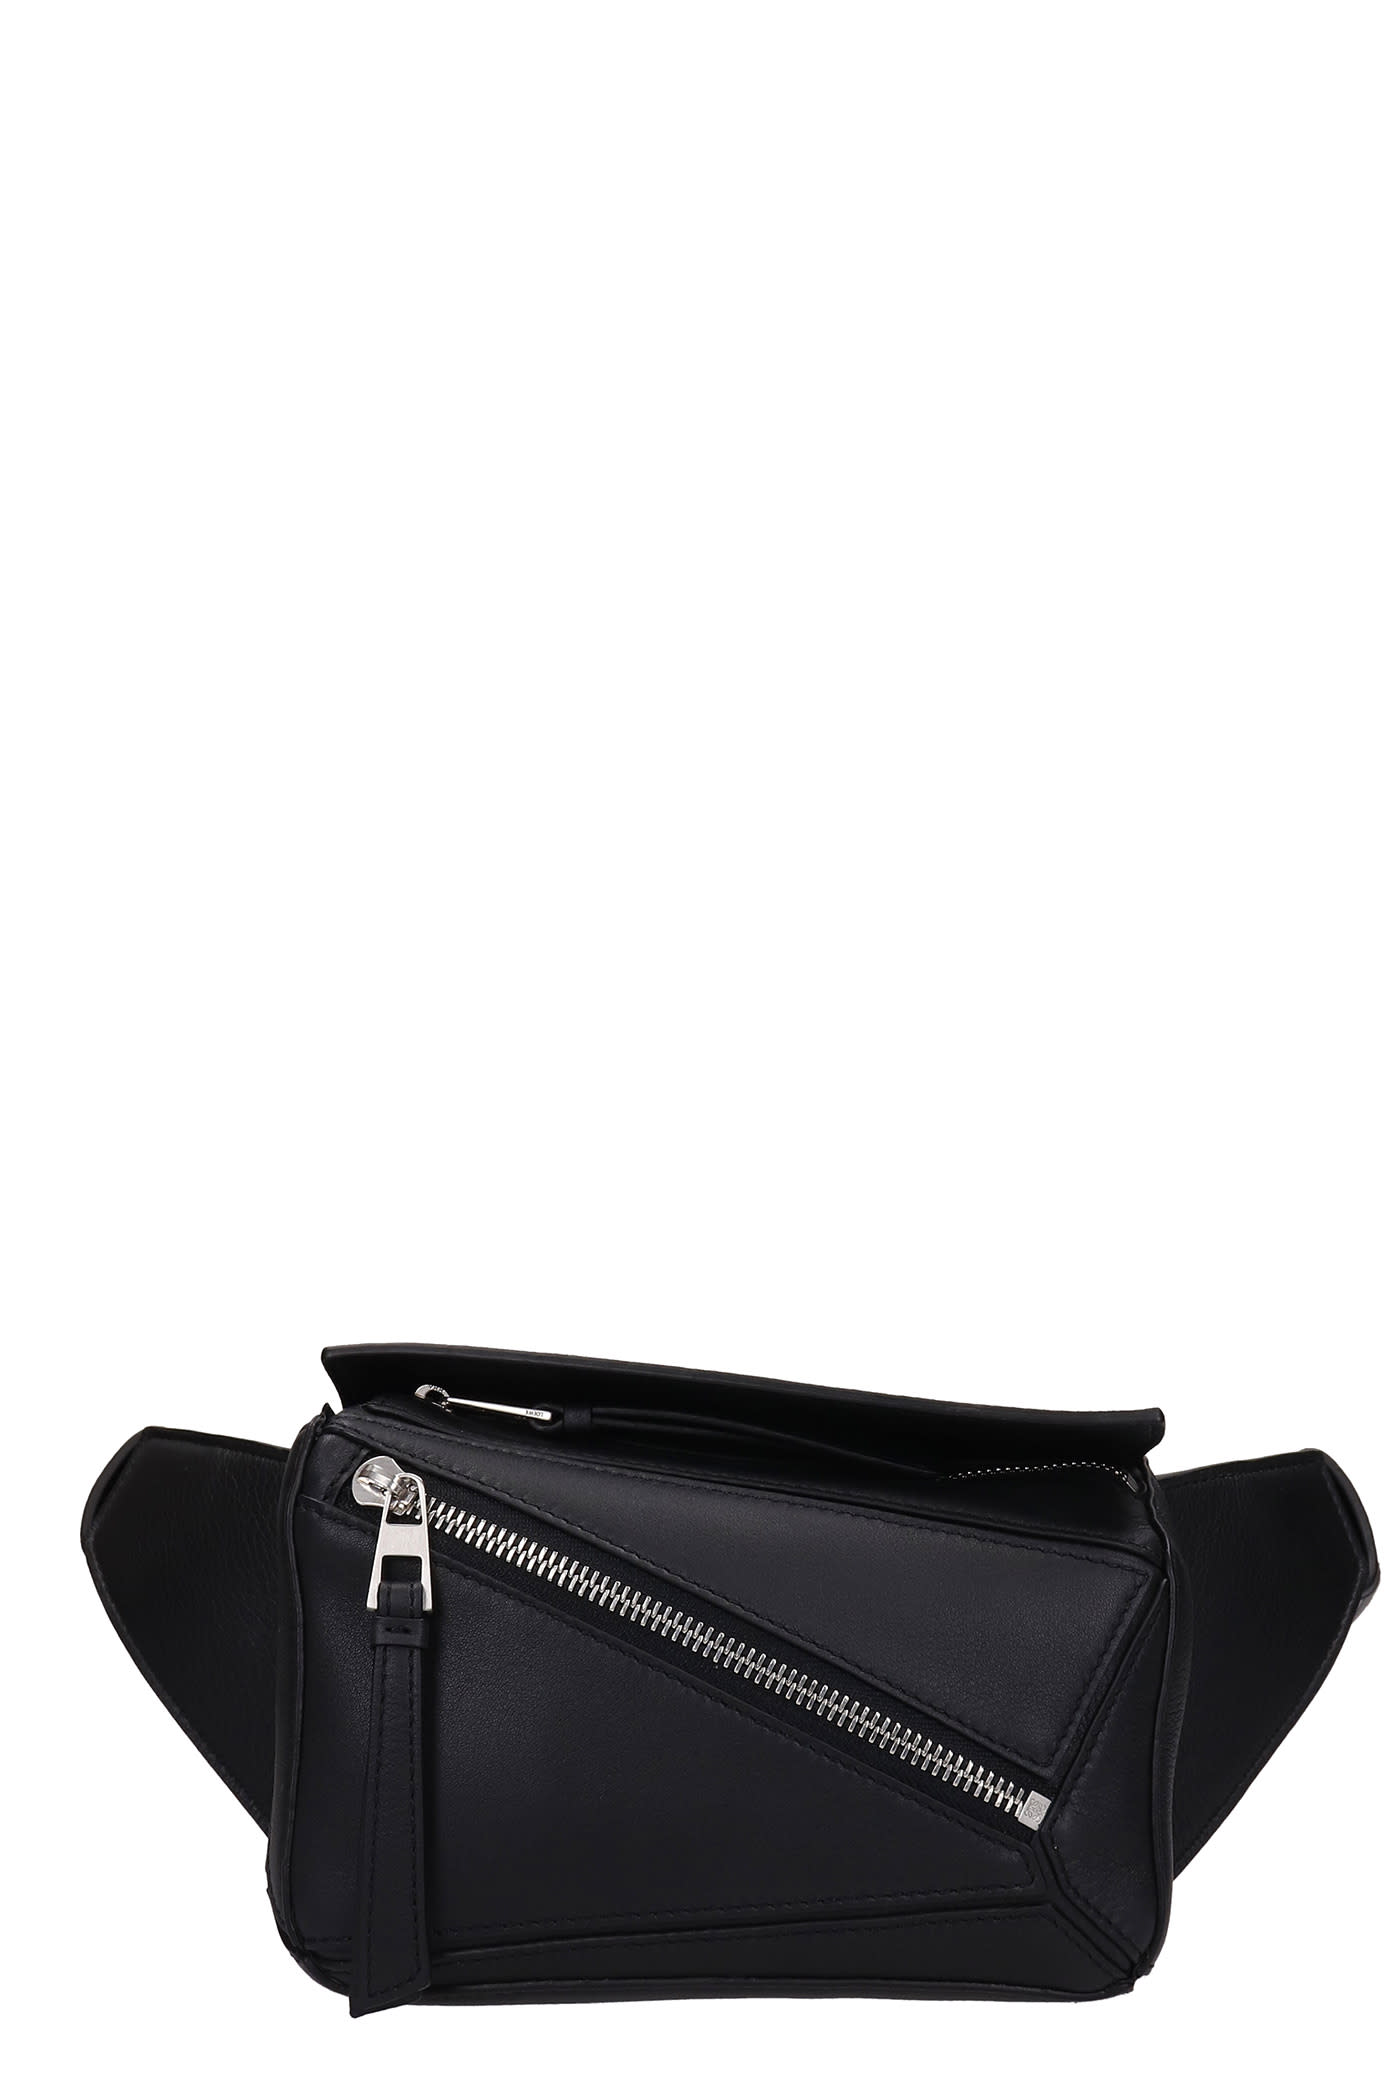 Loewe Waist Bag In Black Leather